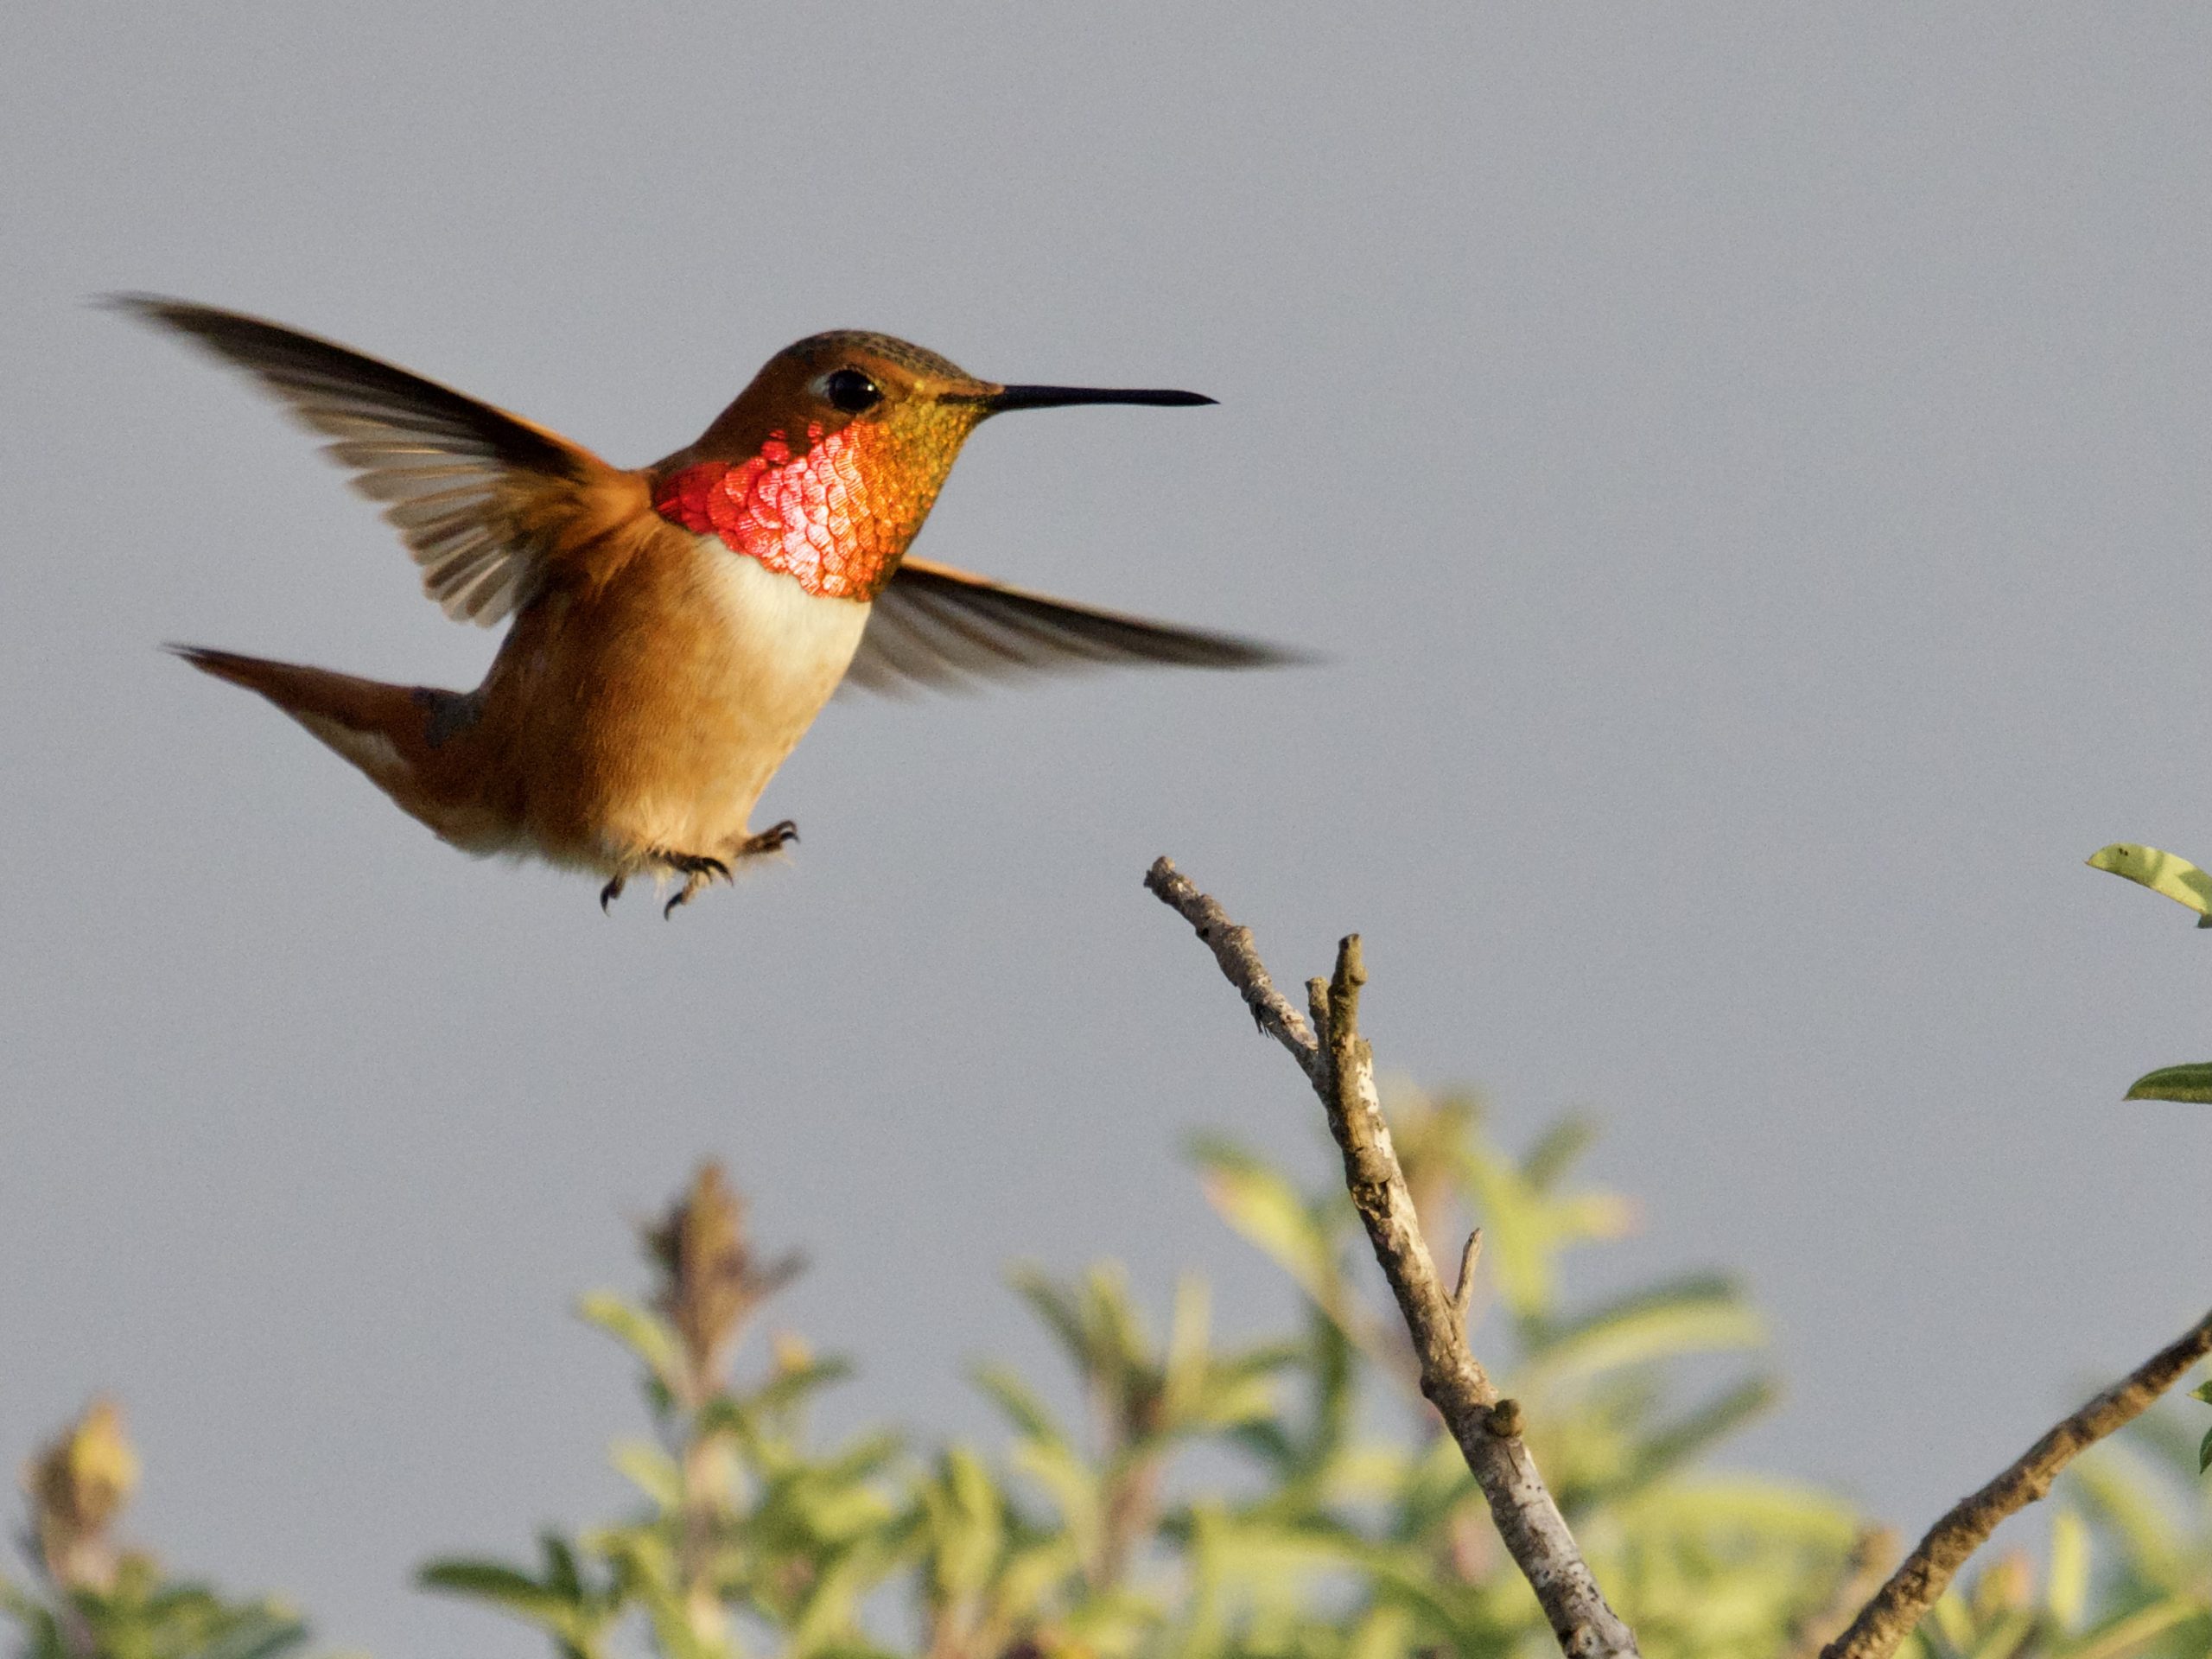 Rufous/Allen’s Hummingbird in flight